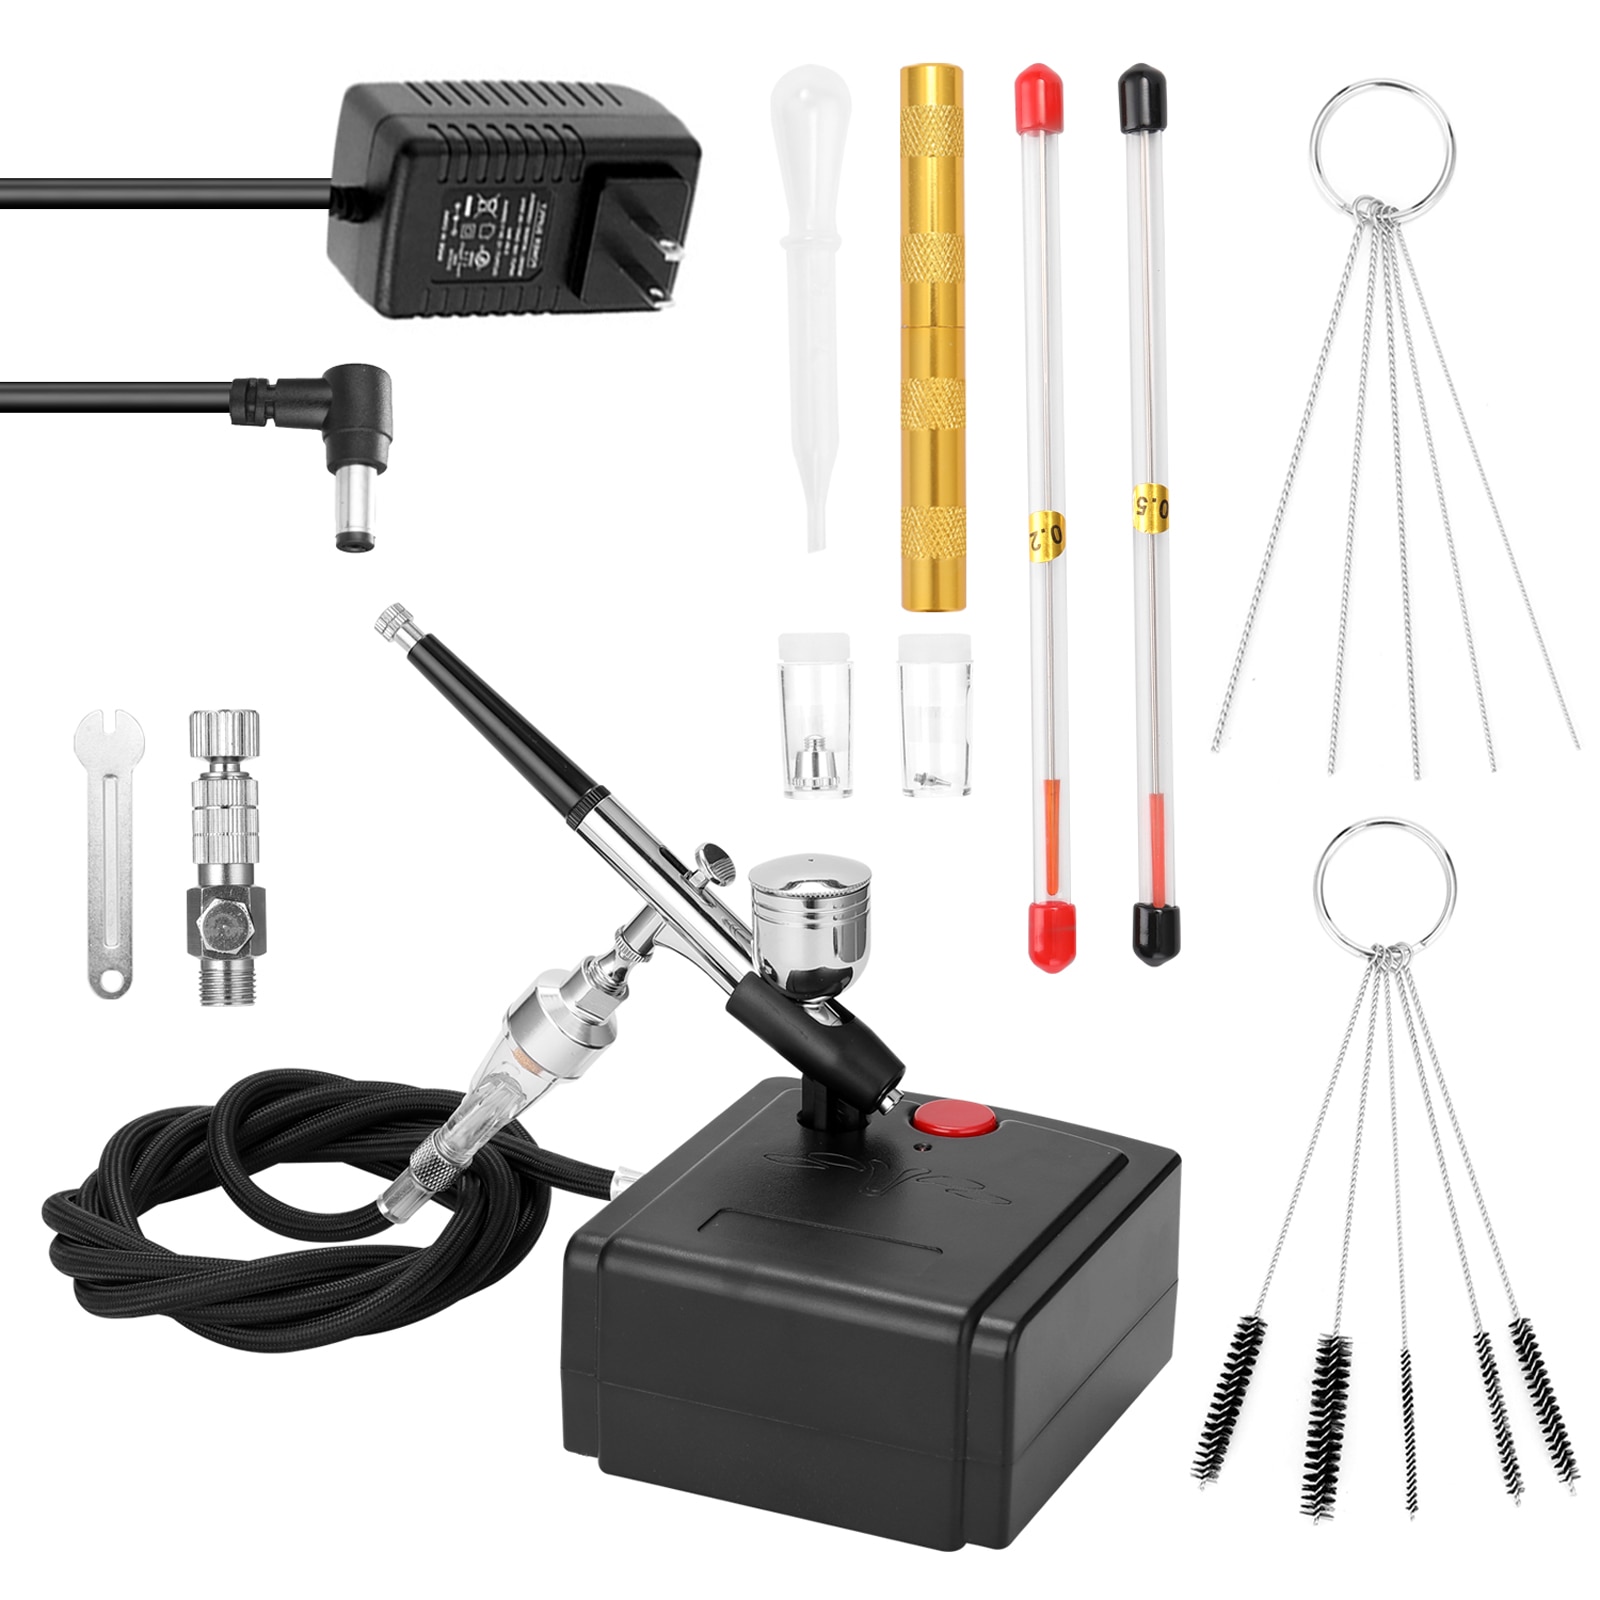 Professionele Airbrush Set Spuitpistool Kits Voor Modelbouw Art Schilderen Met Luchtcompressor & Power Adapter & Airbrush